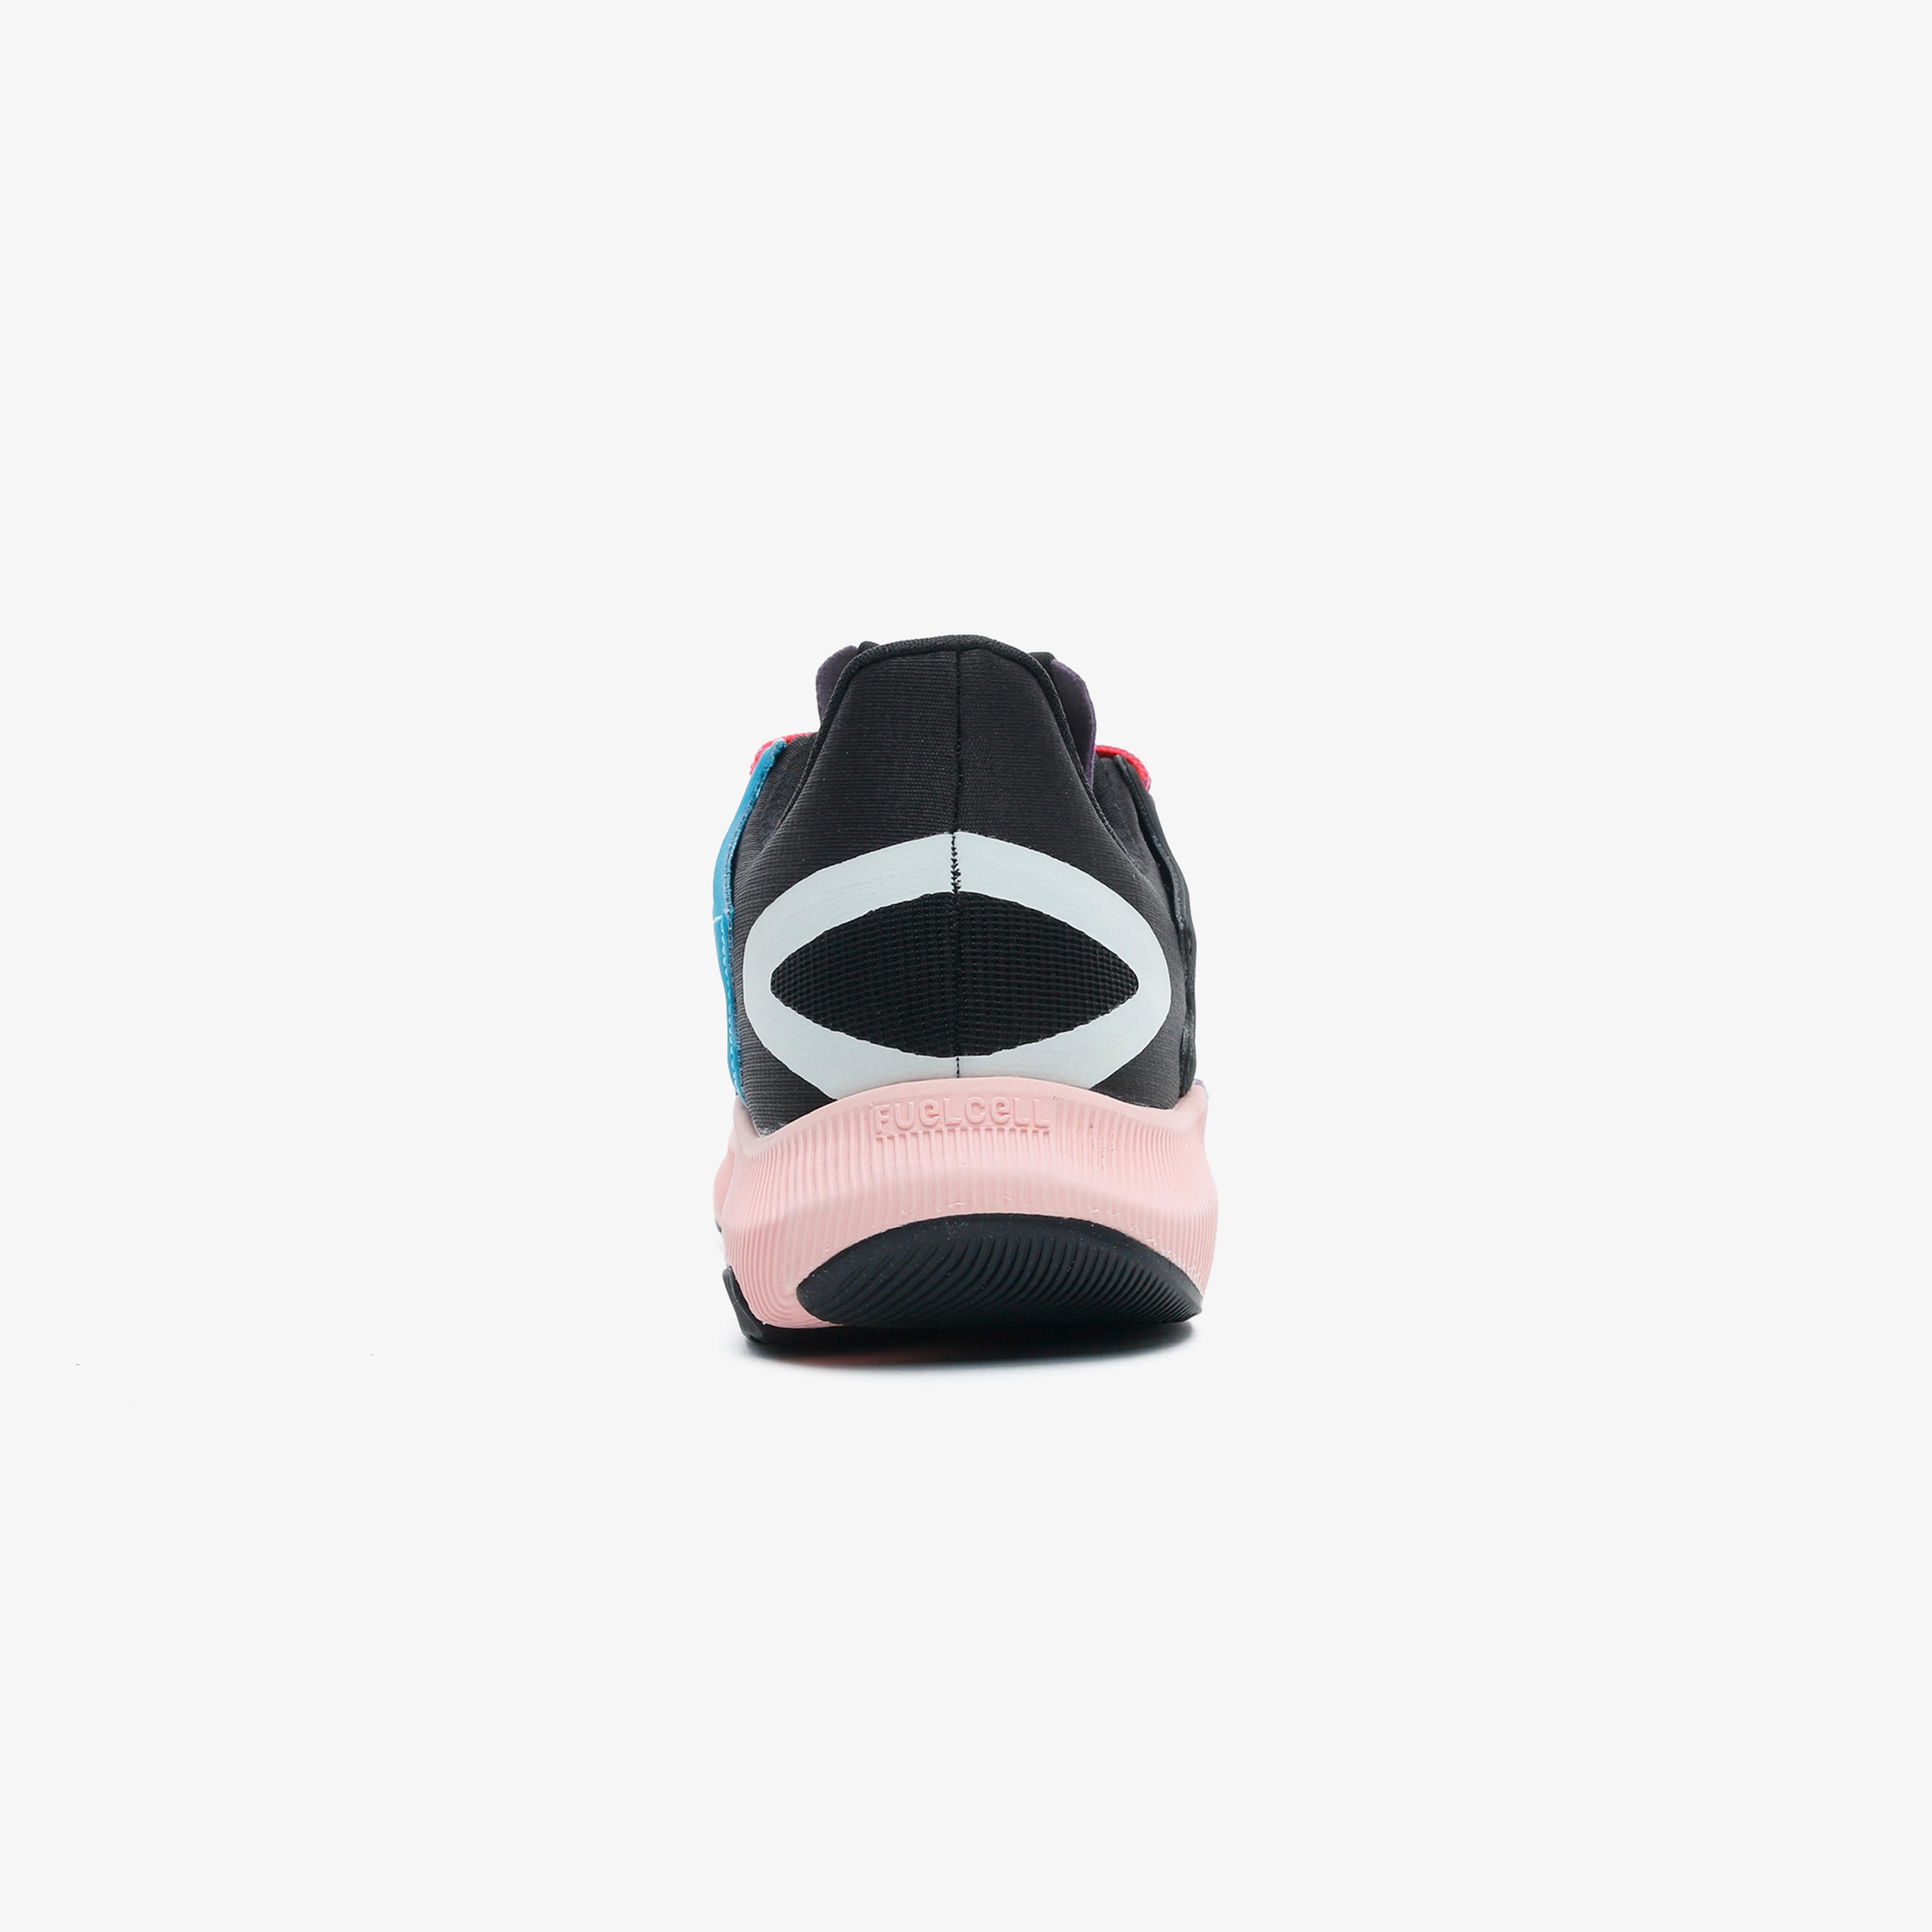 New Balance RMX Kadın Renkli Spor Ayakkabı